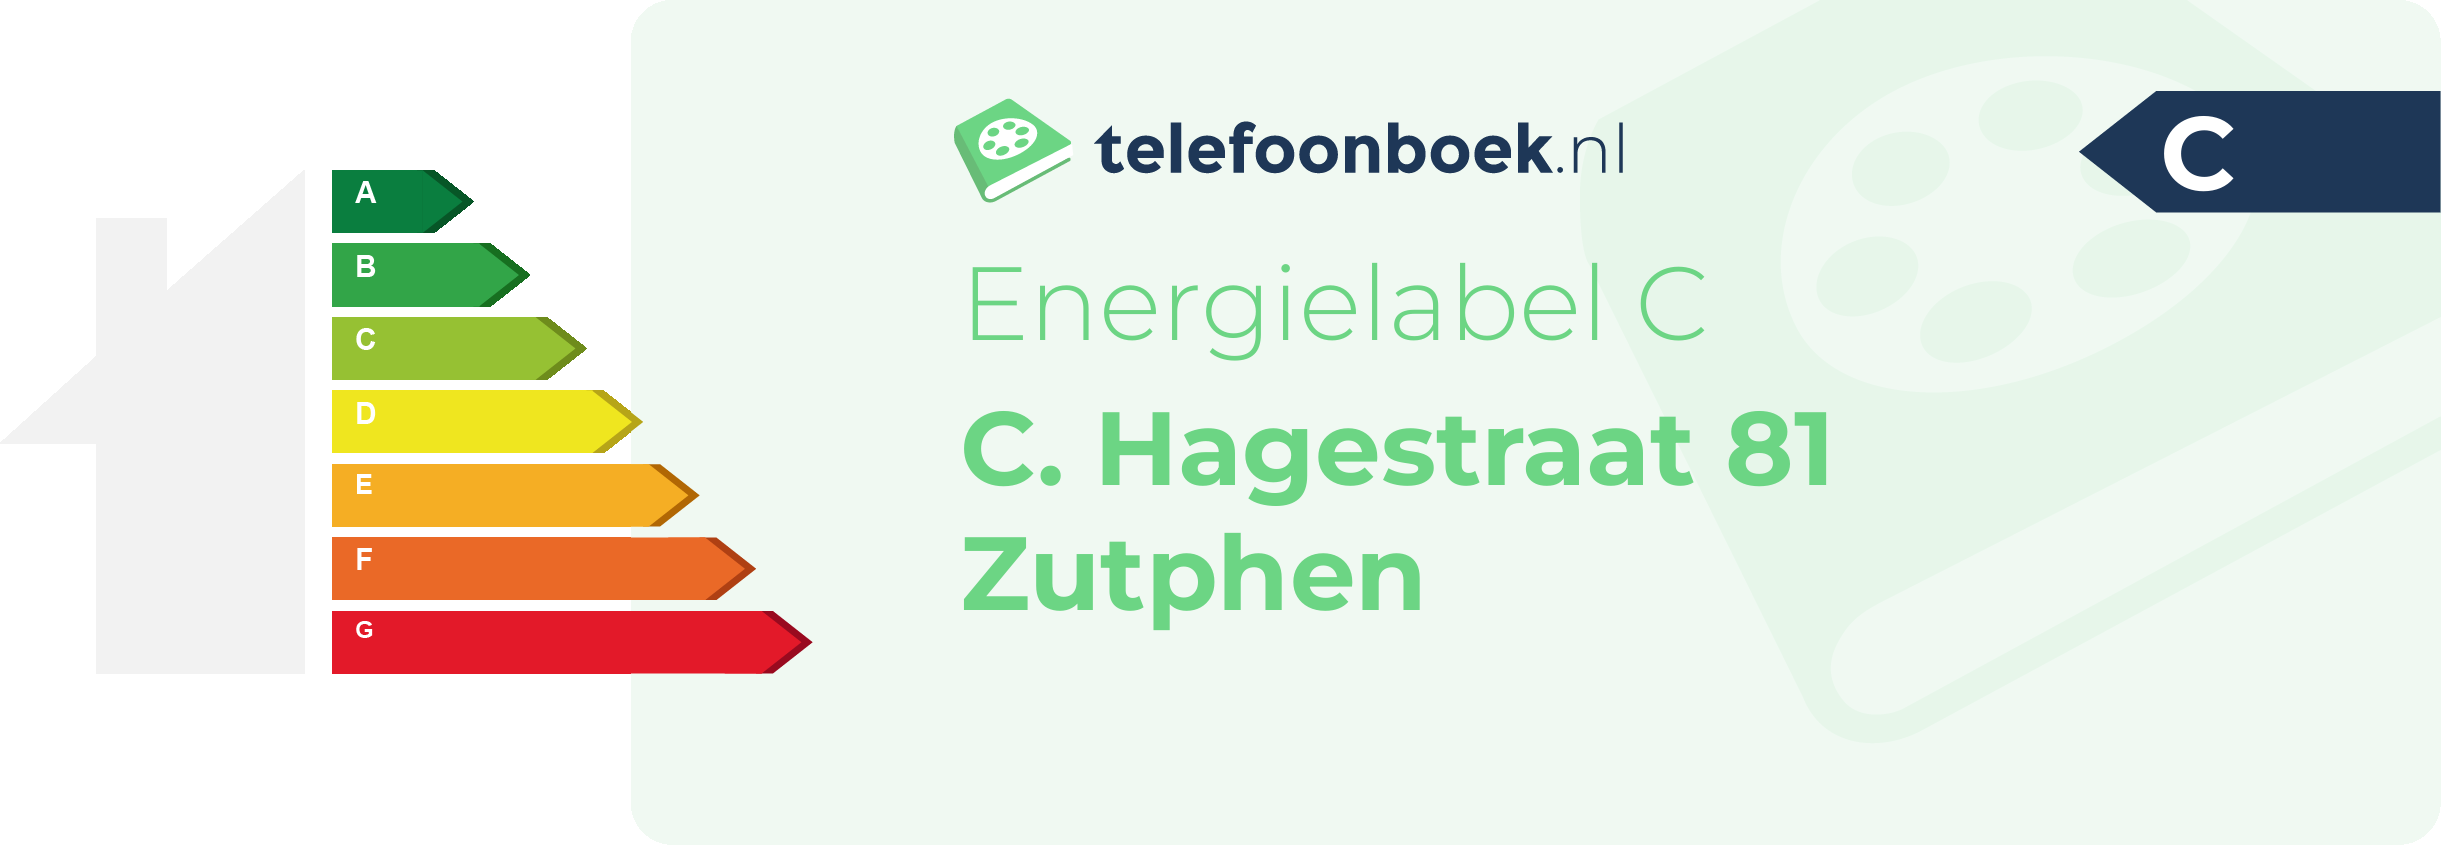 Energielabel C. Hagestraat 81 Zutphen